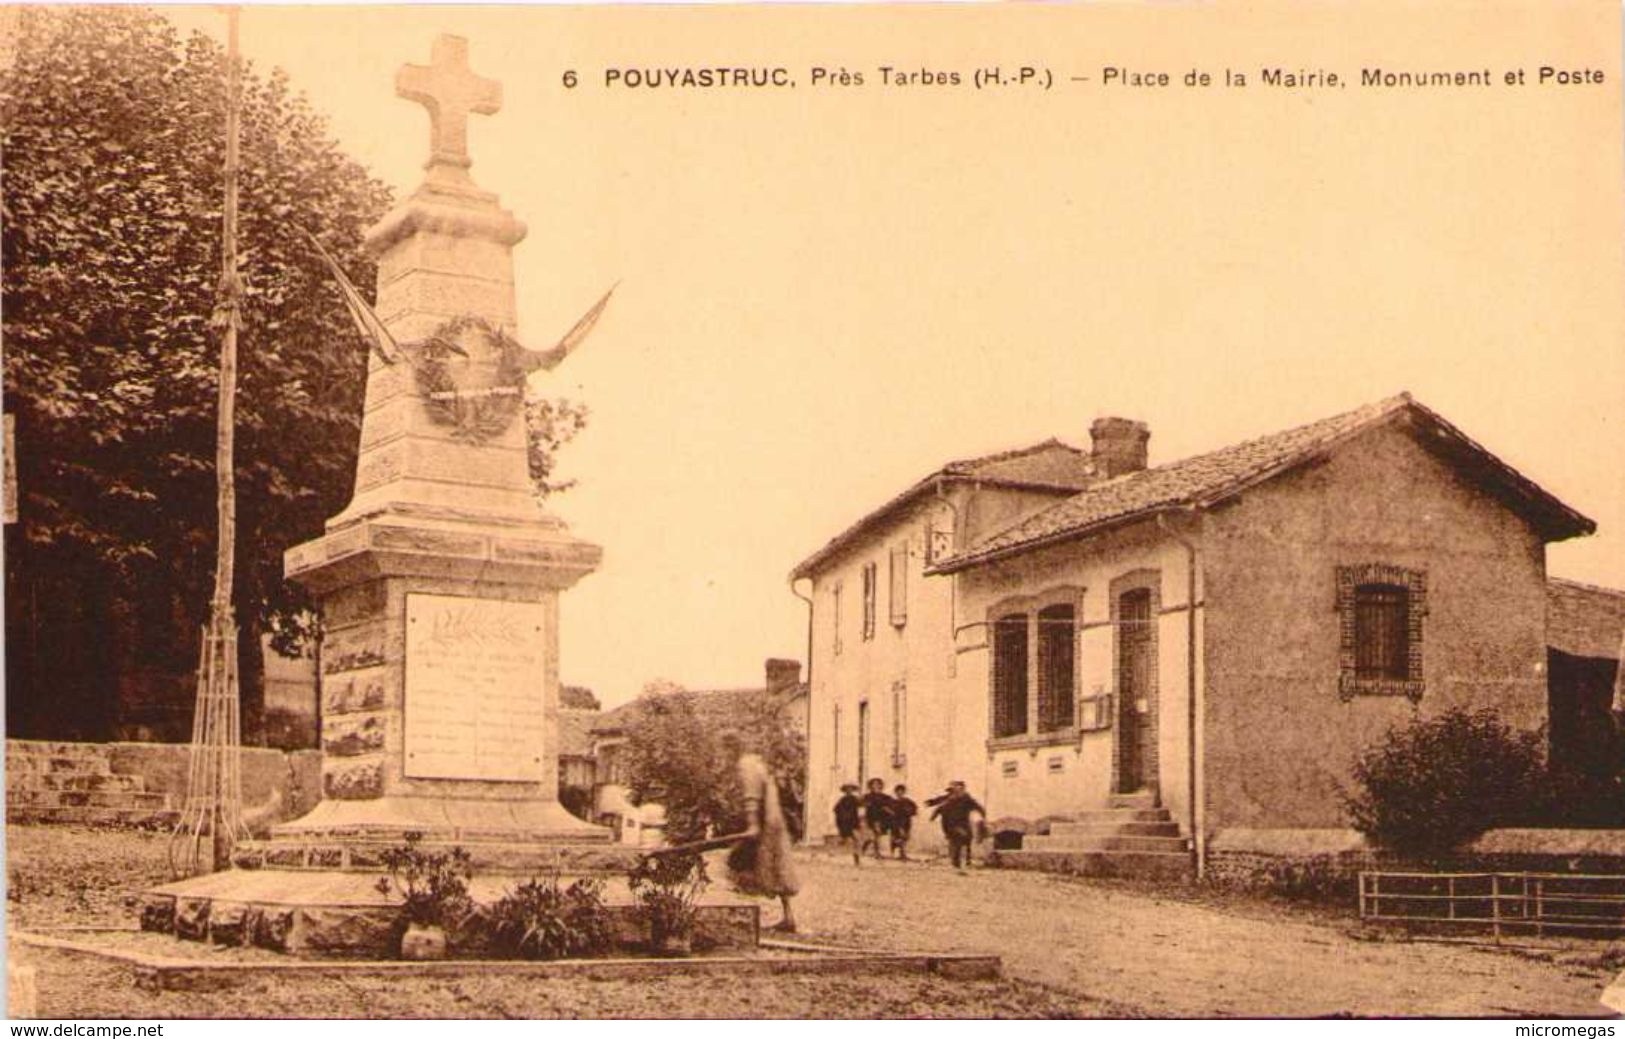 65 - POUYASTRUC, Près Tarbes - Place De La Mairie - Monument Et Poste - Pouyastruc